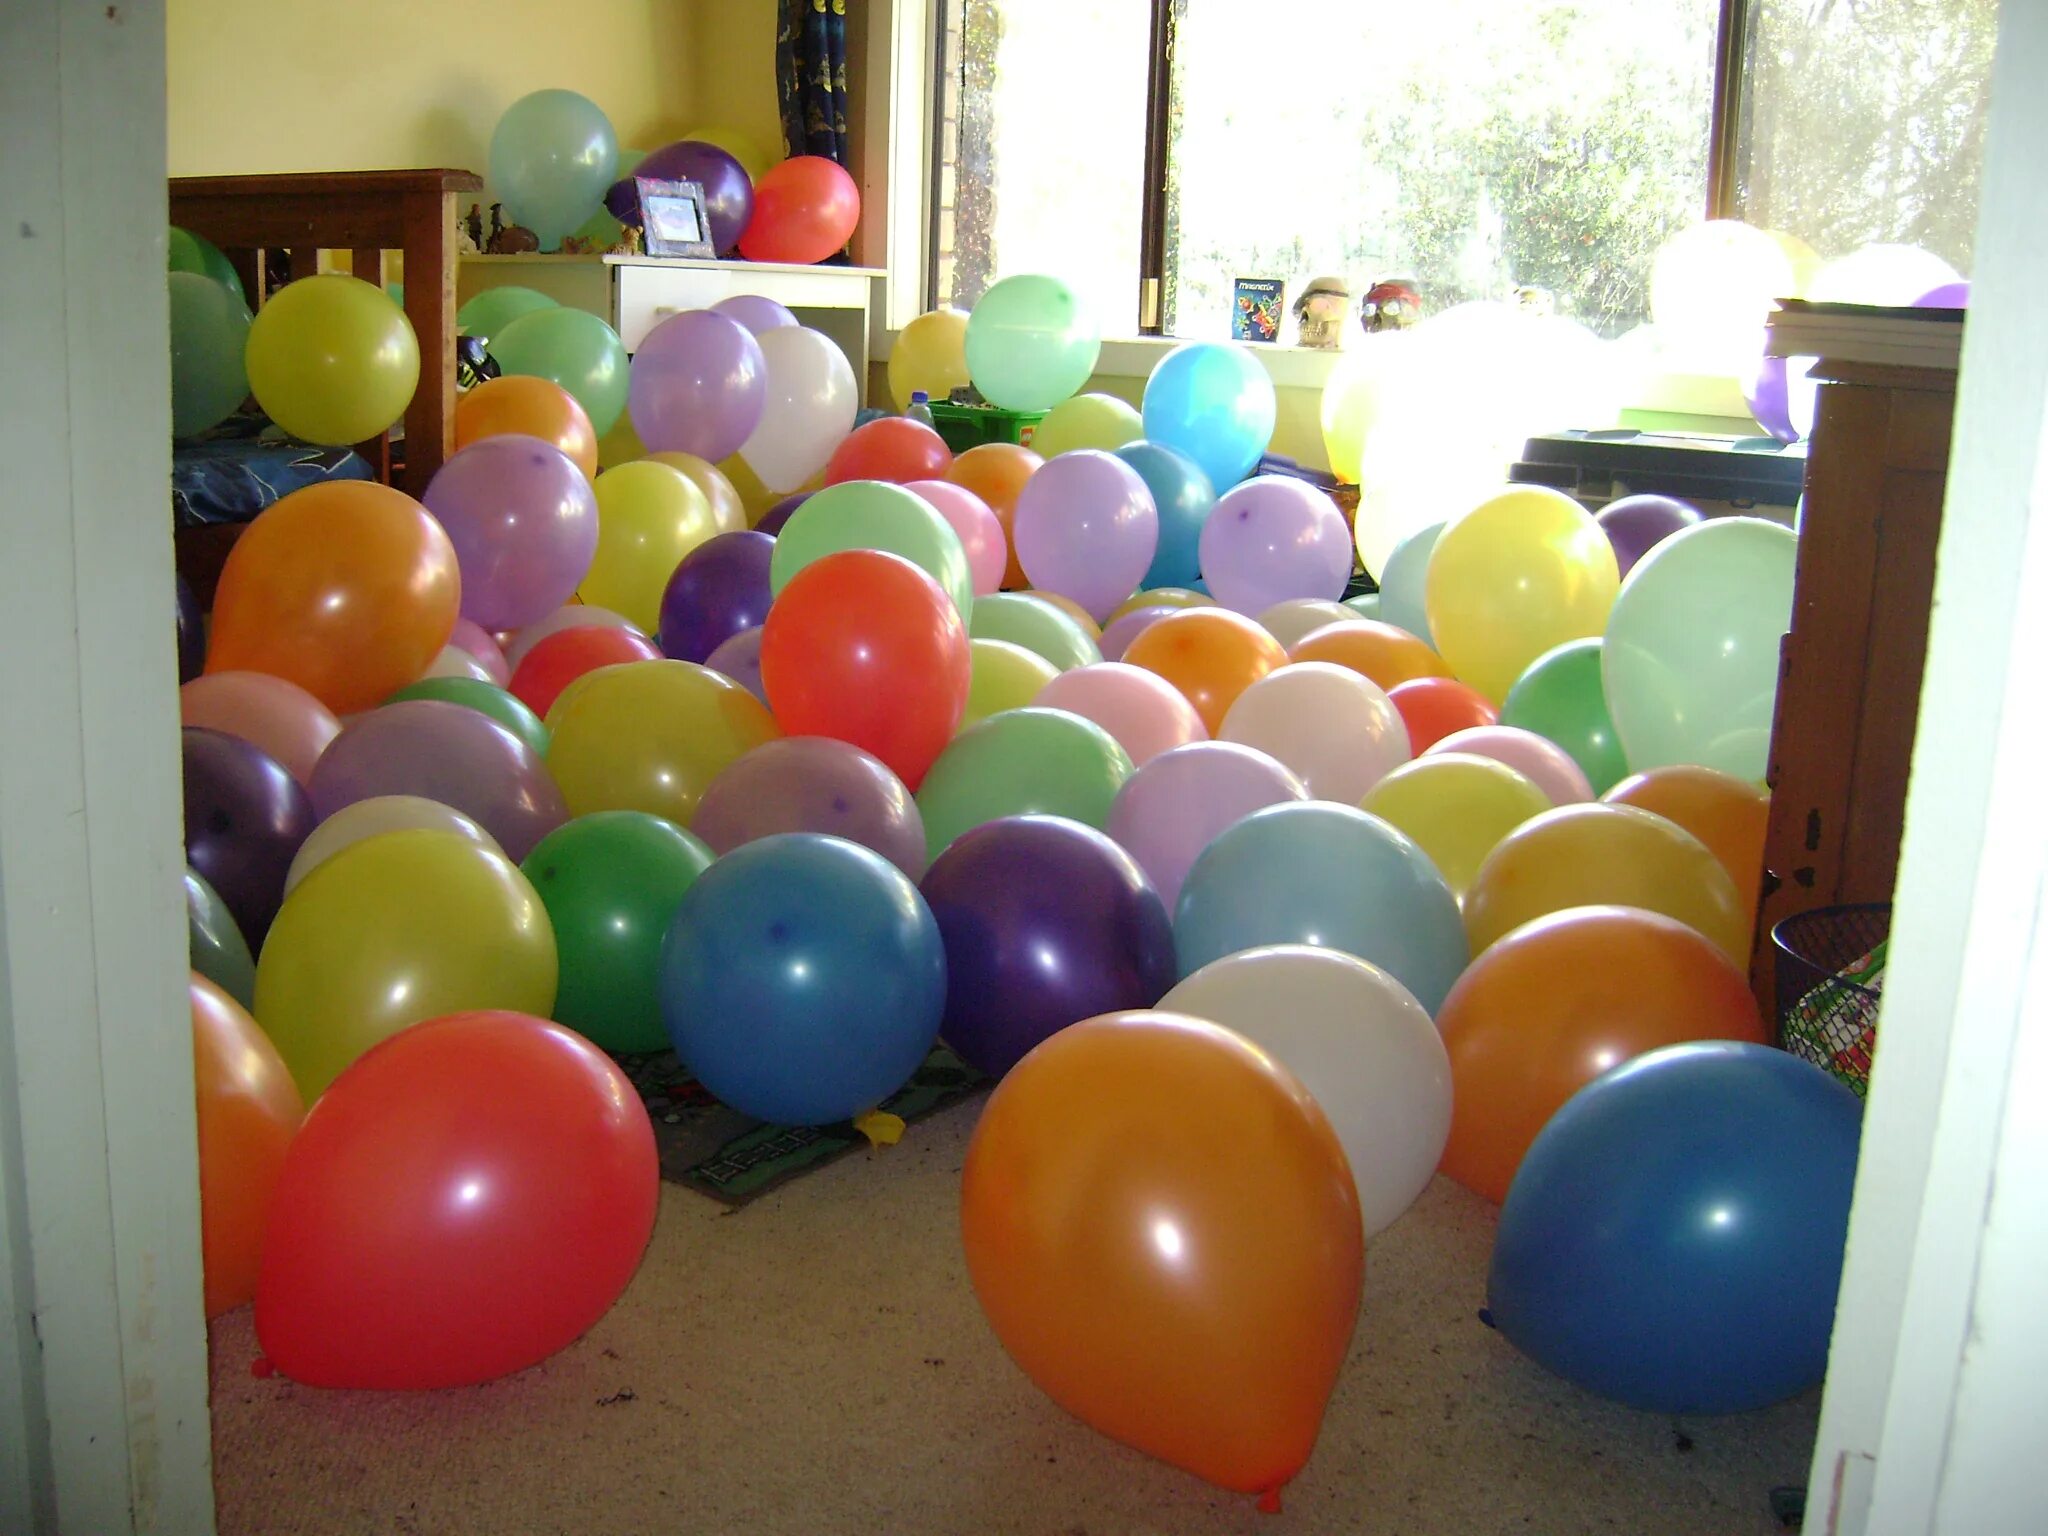 Шары надувные. Воздушные шары на полу. Комната в шарах. Украшение обычными шарами.